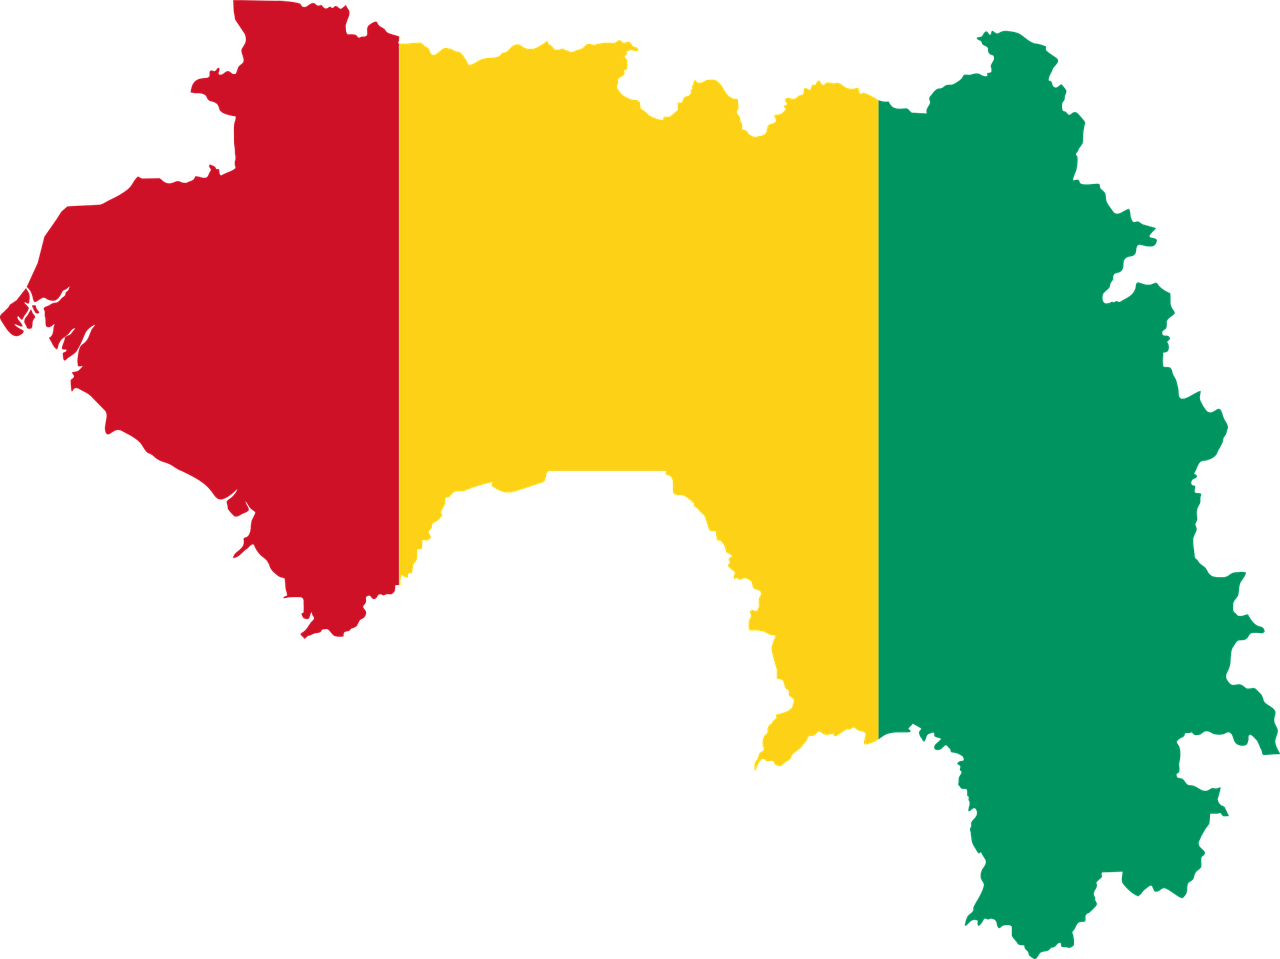 La Junta Militar de Guinea anuncia un plan de transición democrática de 24 meses